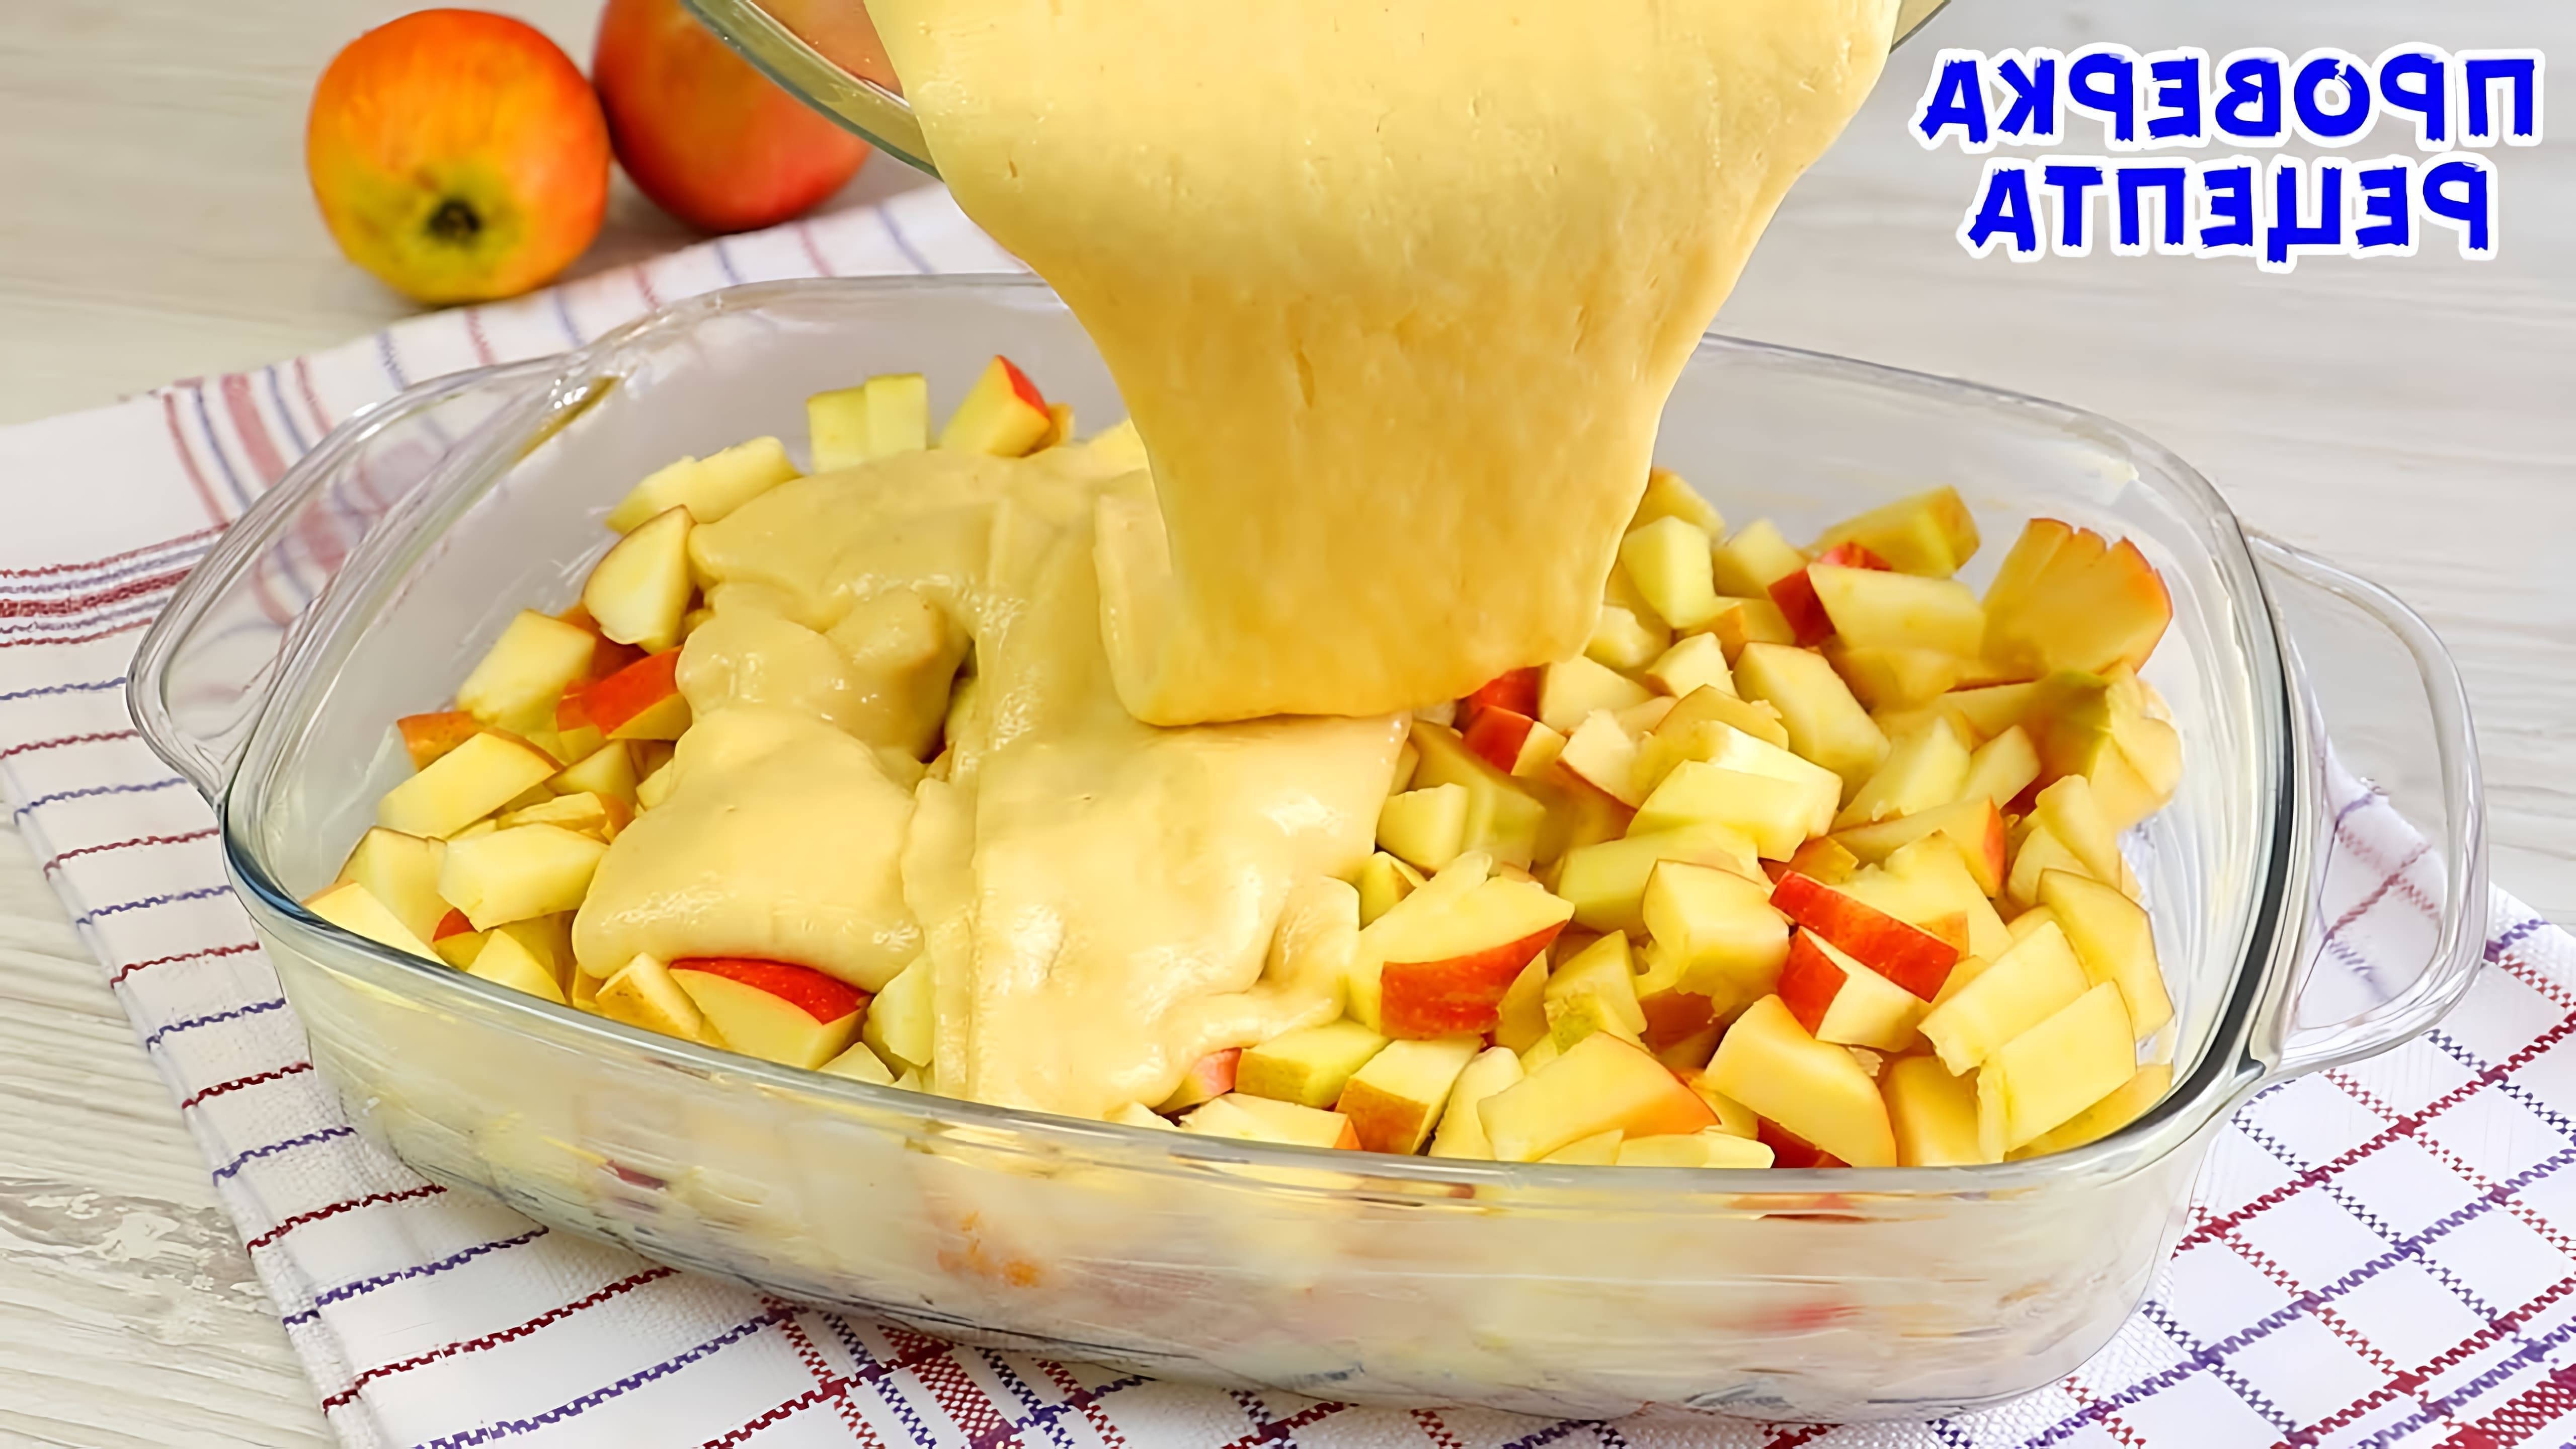 В этом видео демонстрируется рецепт ленивого яблочного пирога, который готовится всего за 5 минут